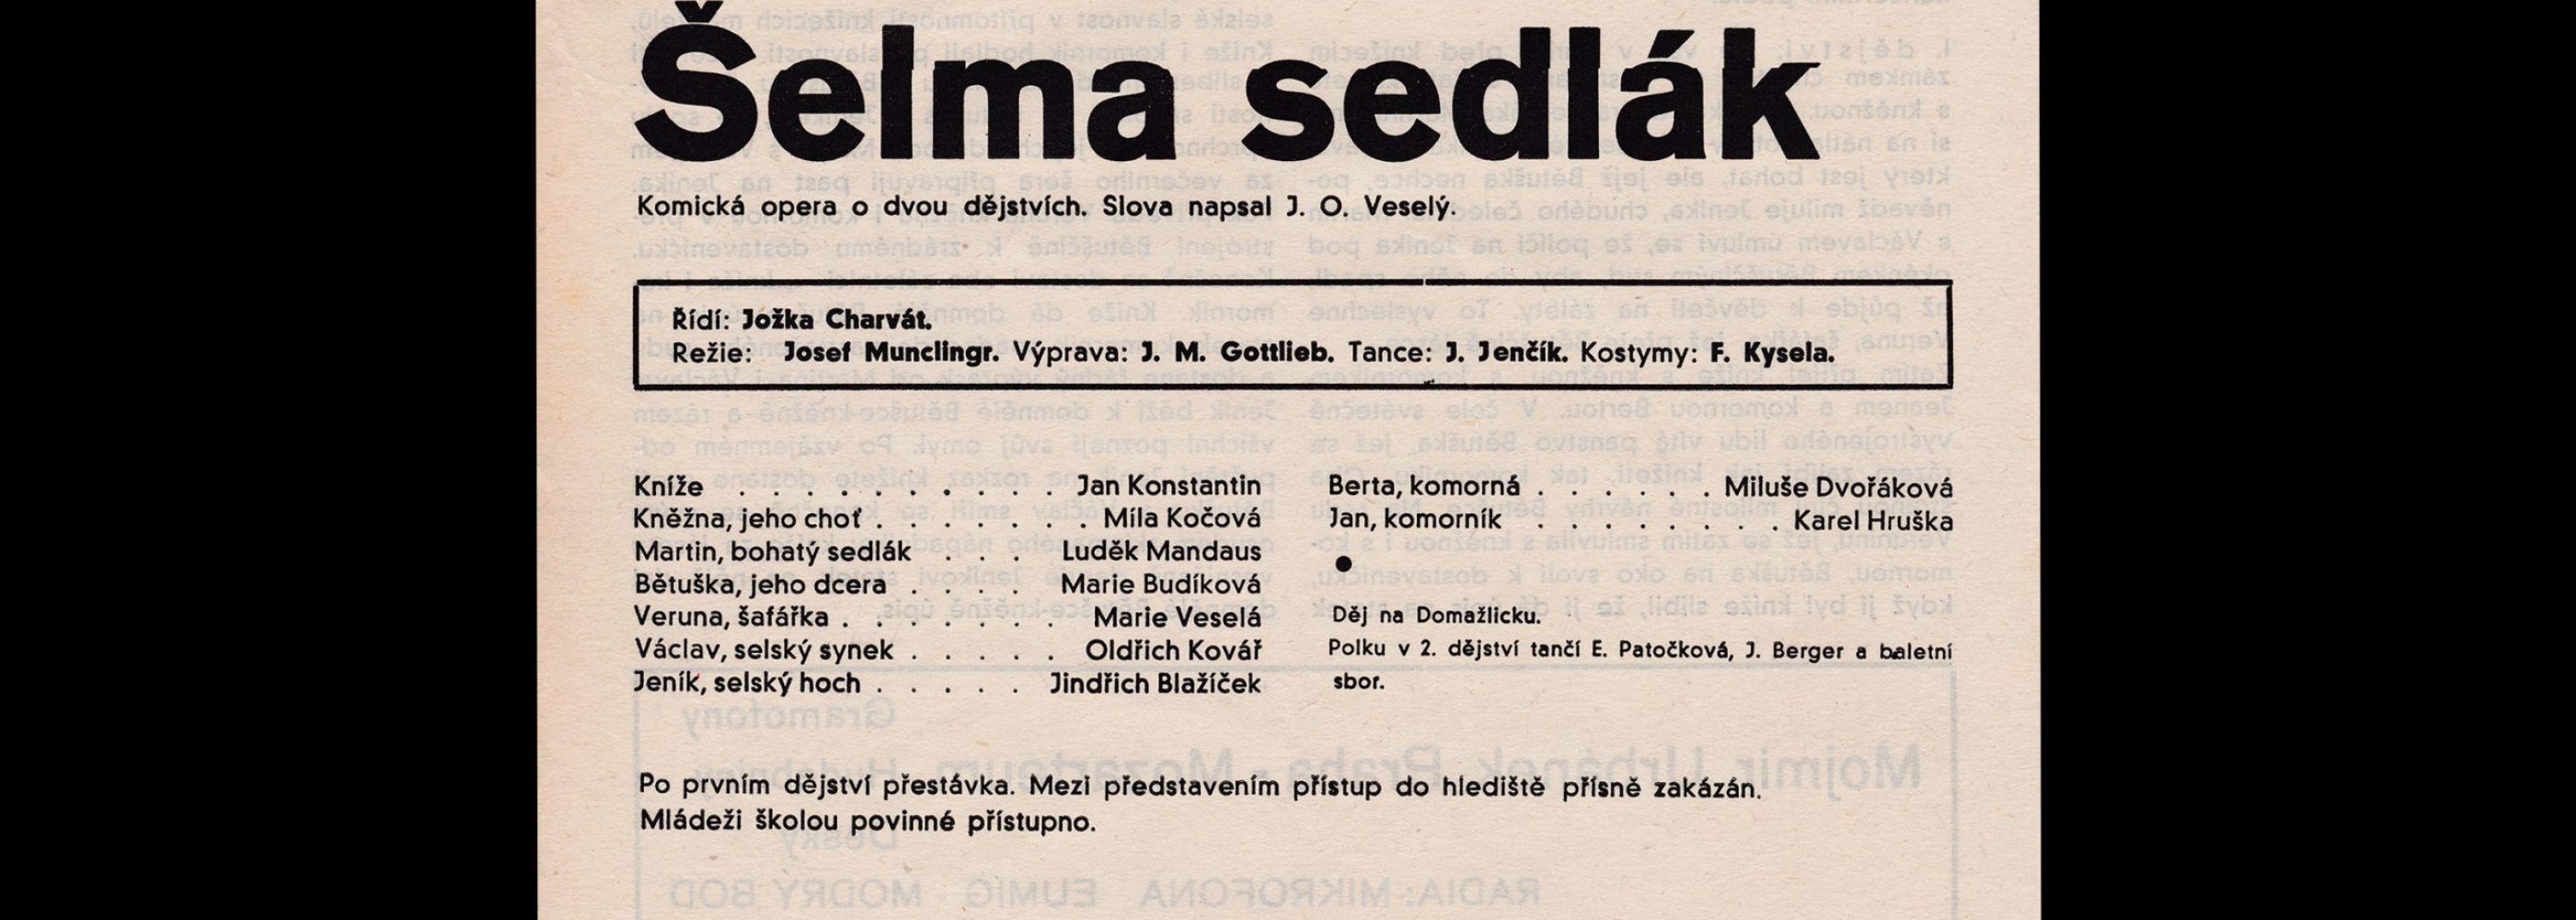 Šelma sedlák designed by Ludislav Sutnar